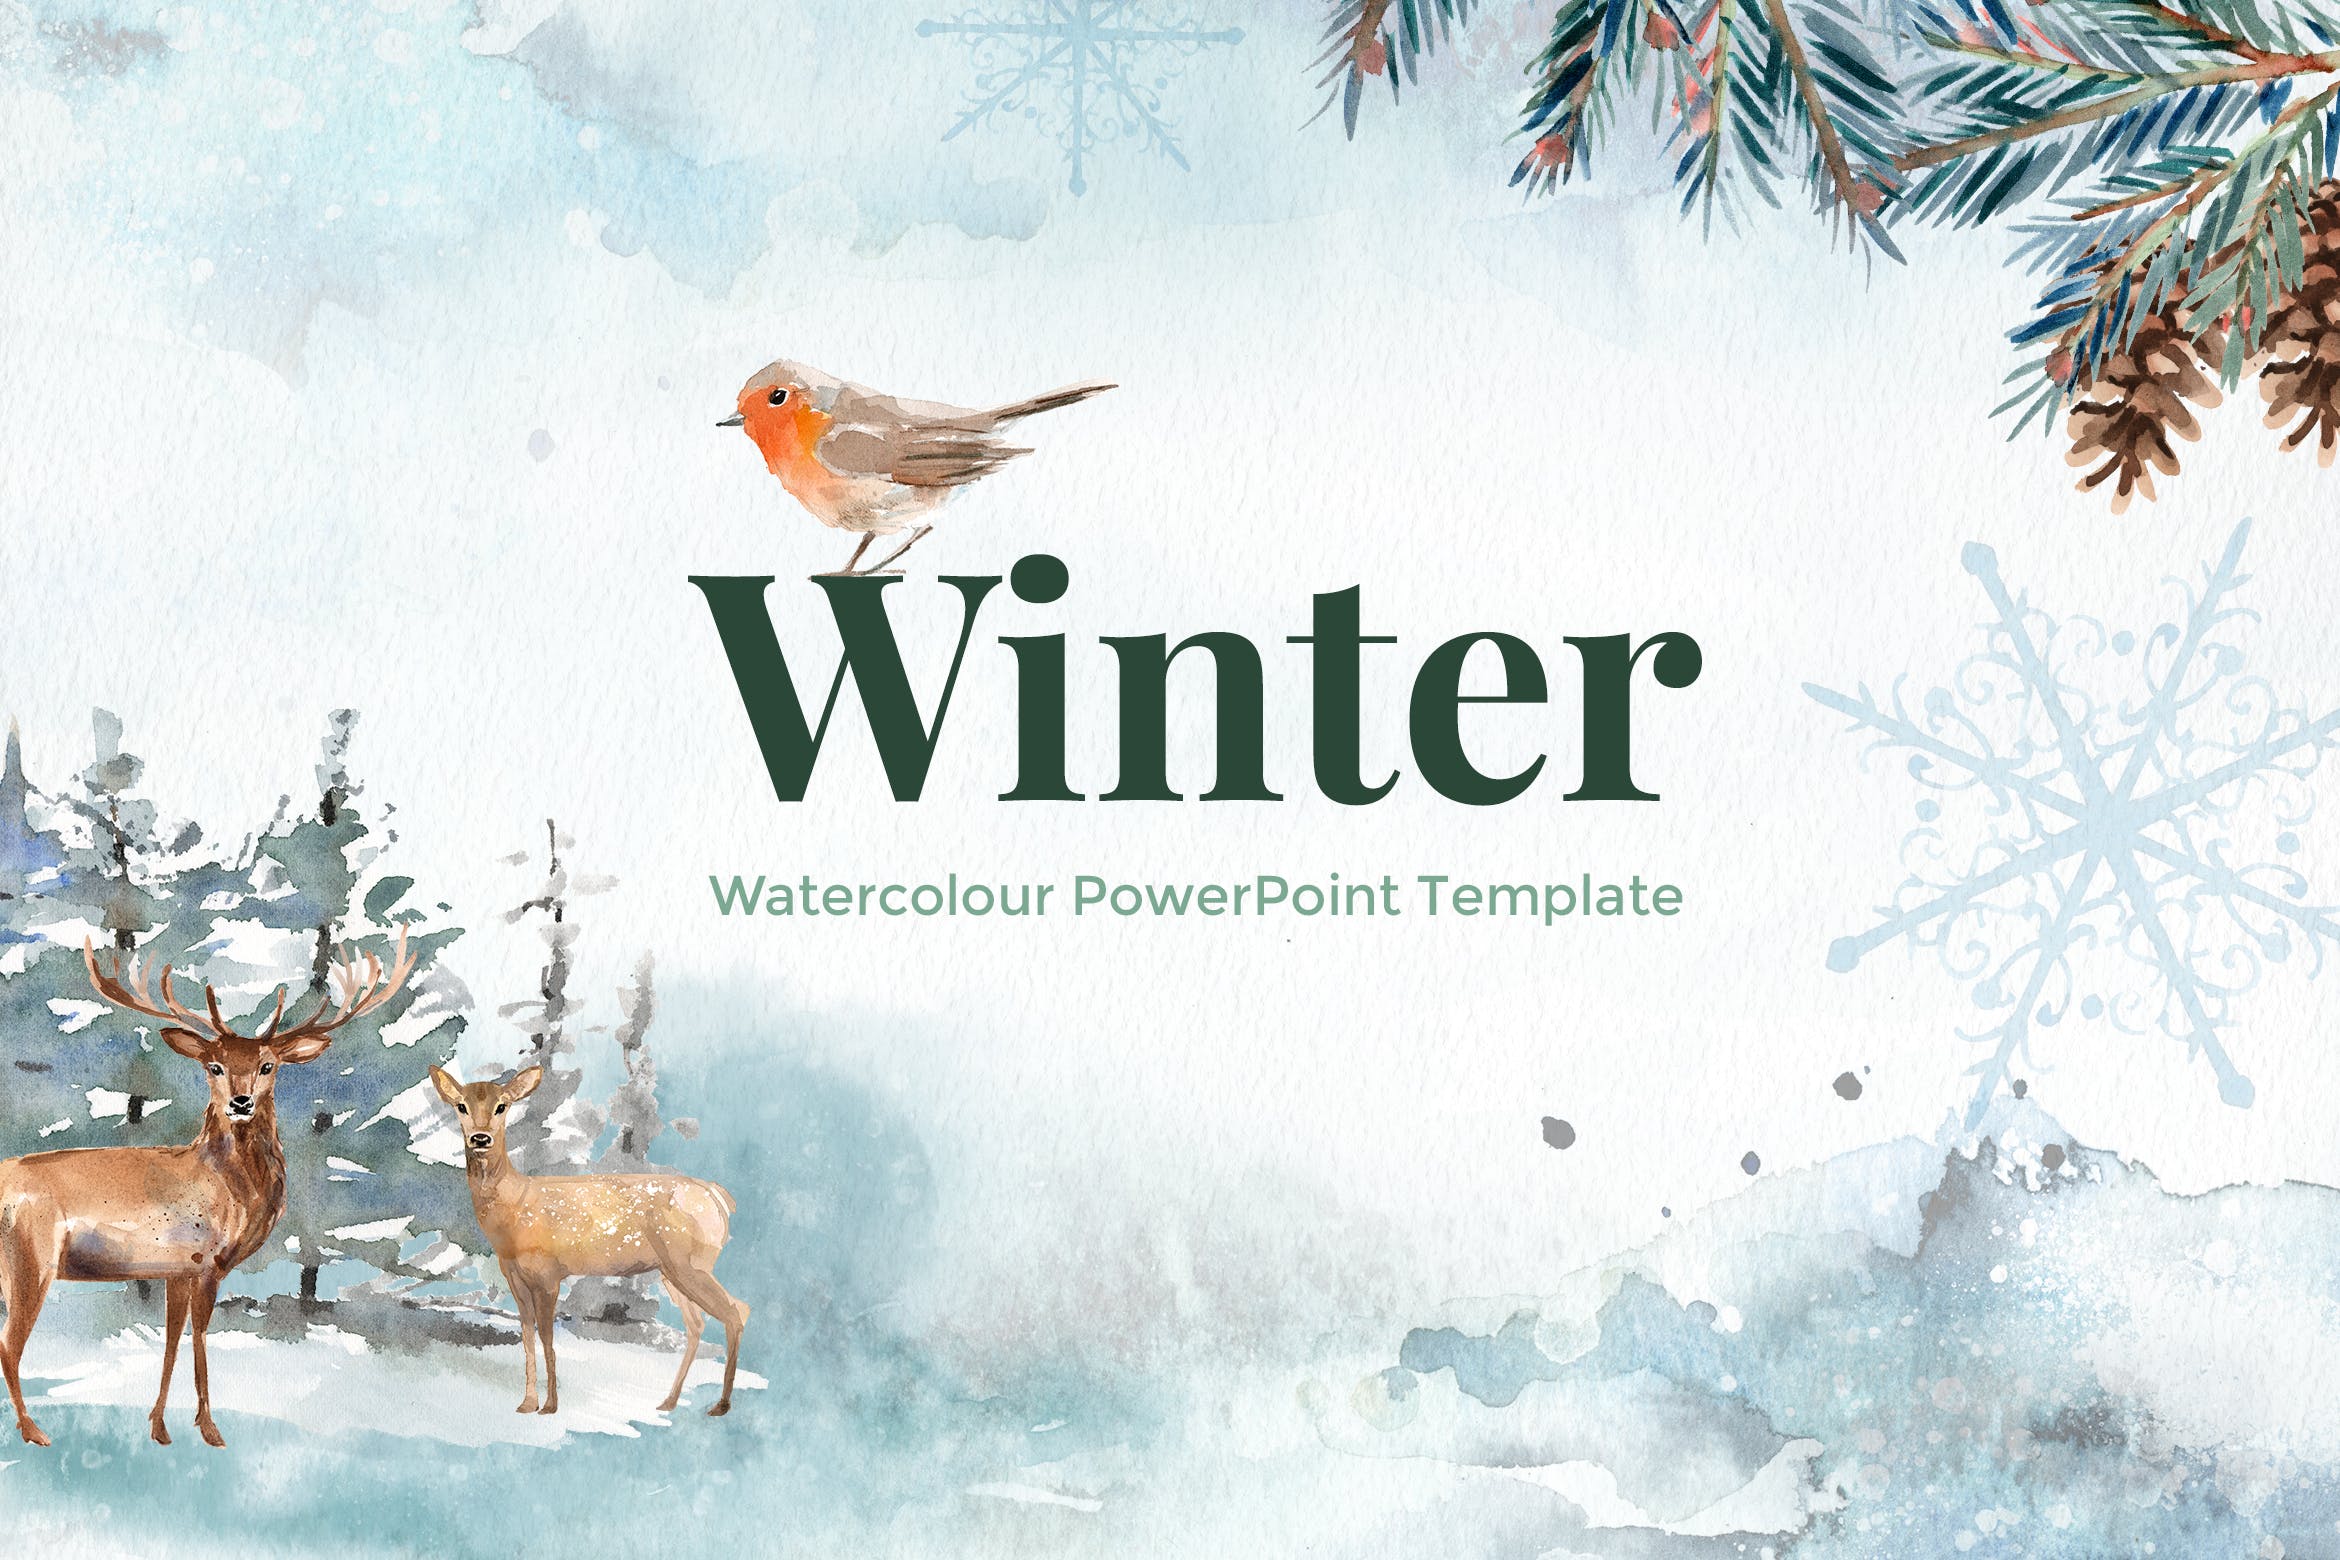 冬季水彩设计风格素材天下精选PPT模板下载 Winter – Watercolour PowerPoint Template插图